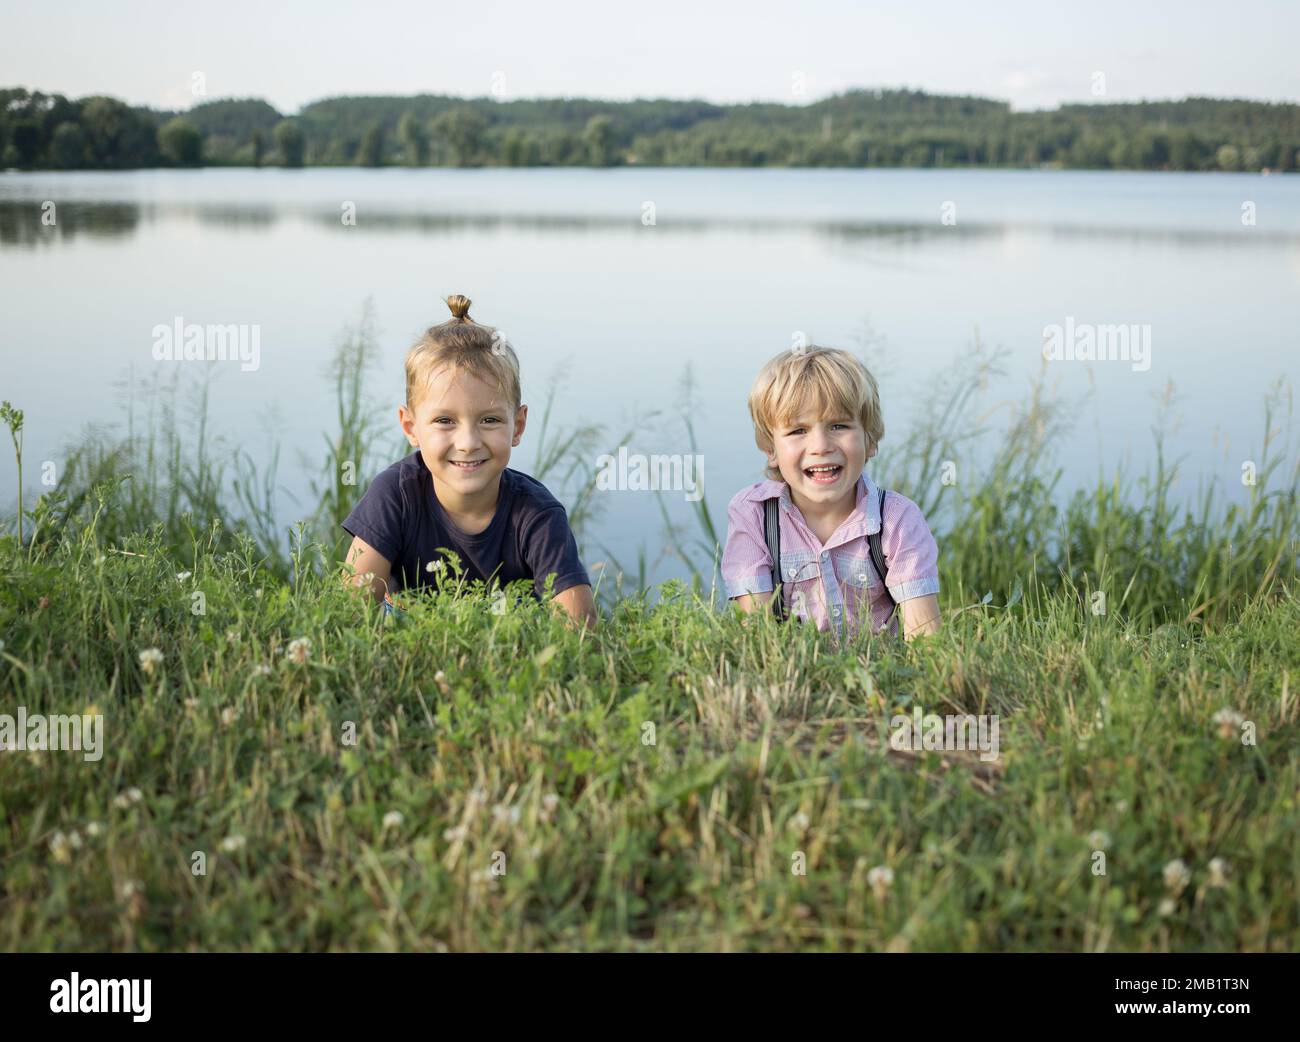 Deux enfants heureux se trouvent sur leurs estomacs dans l'herbe près du lac. Amis souriants les garçons se reposent dans un parc d'été. un mode de vie sain. joie, positi Banque D'Images